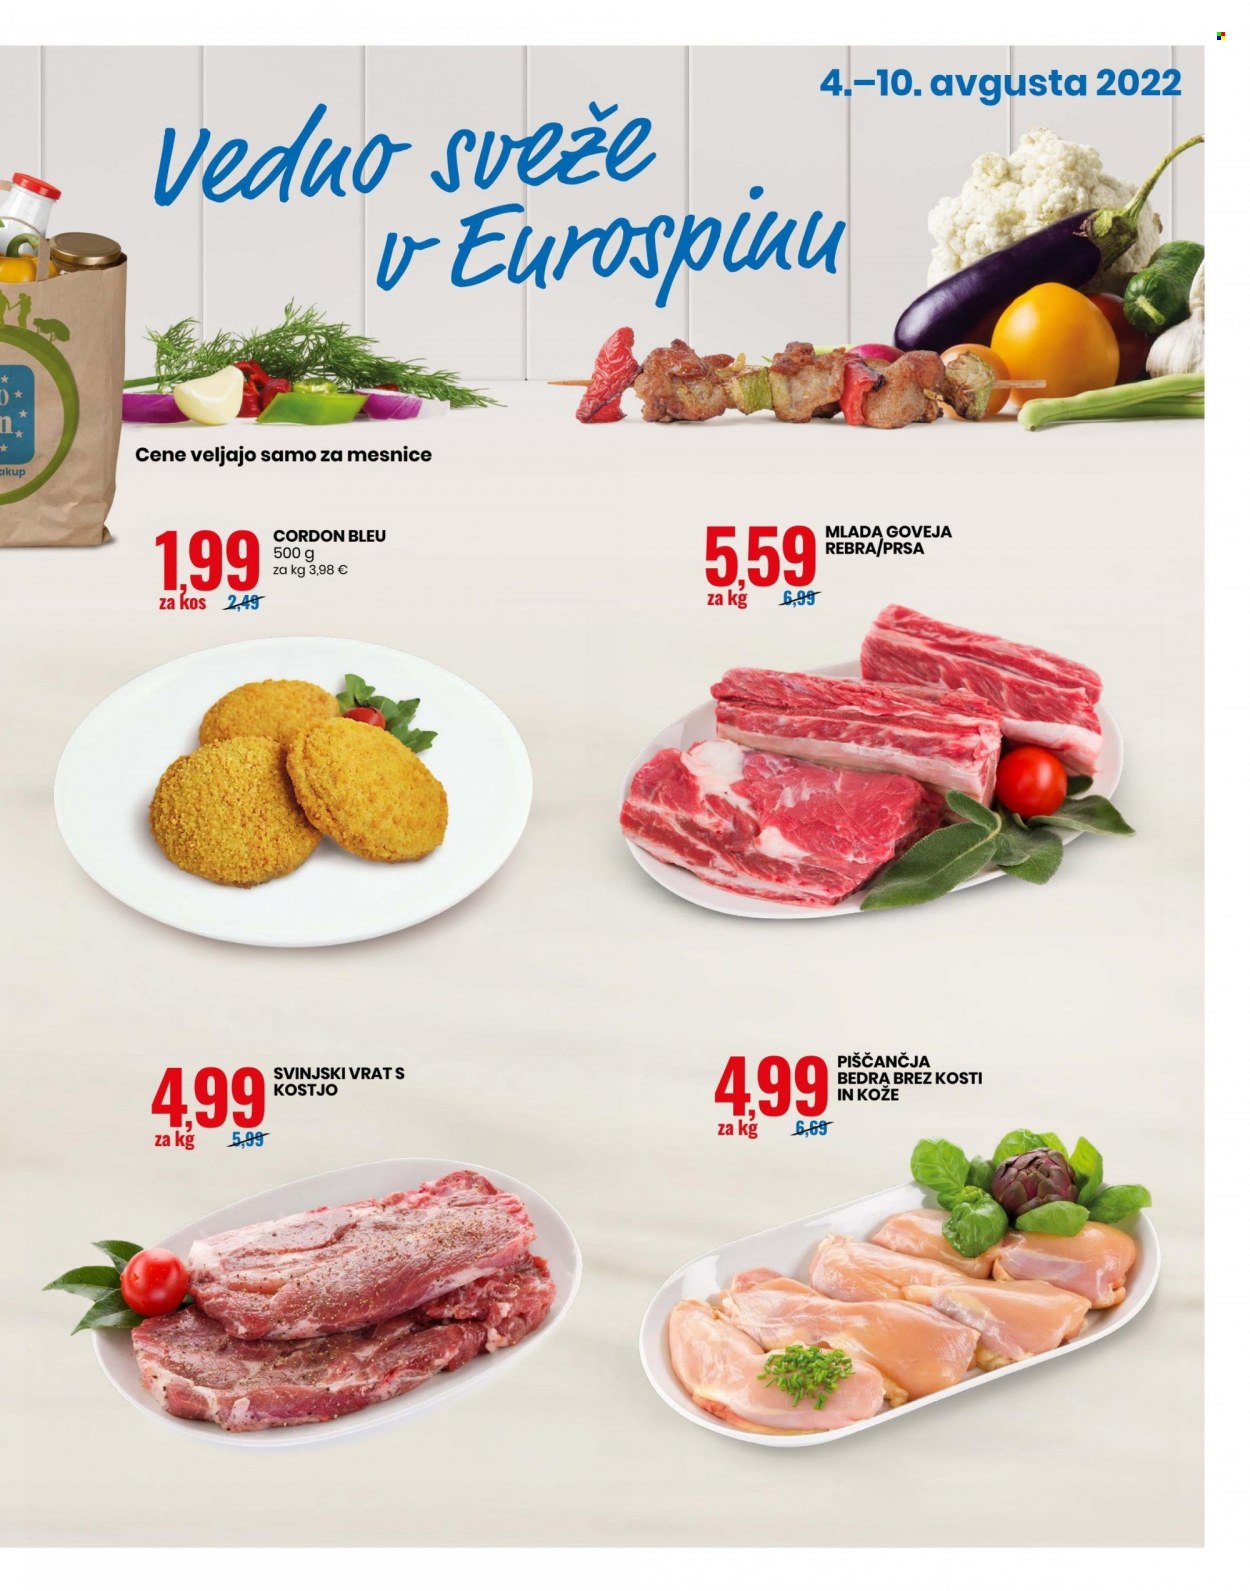 thumbnail - EuroSpin katalog - 4.8.2022 - 10.8.2022 - Ponudba izdelkov - goveja rebra, goveje meso, mlada goveja rebra, mlado goveje meso, rebra, svinjski vrat, svinjski vrat s kostjo, svinjsko meso. Stran 3.